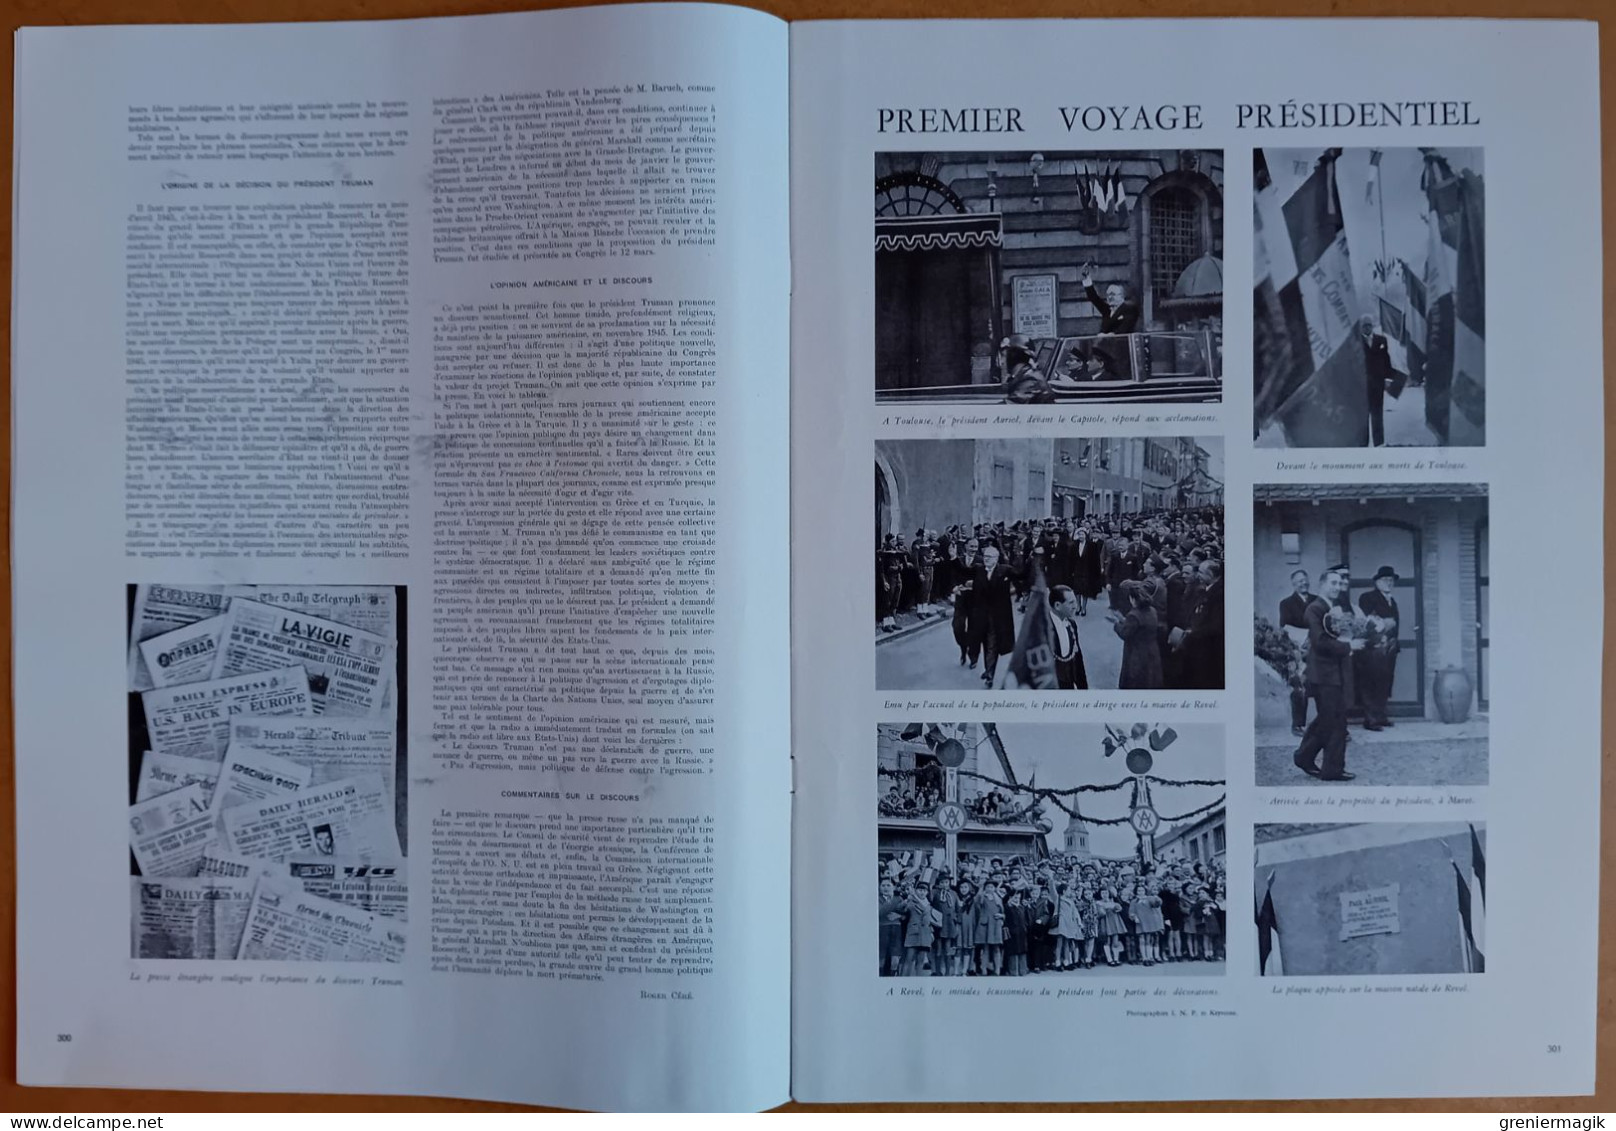 France Illustration N°78 29/03/1947 Indochine Saïgon/Exposition Collection De Sa Majesté Londres/Autriche/Auriol à Revel - Testi Generali